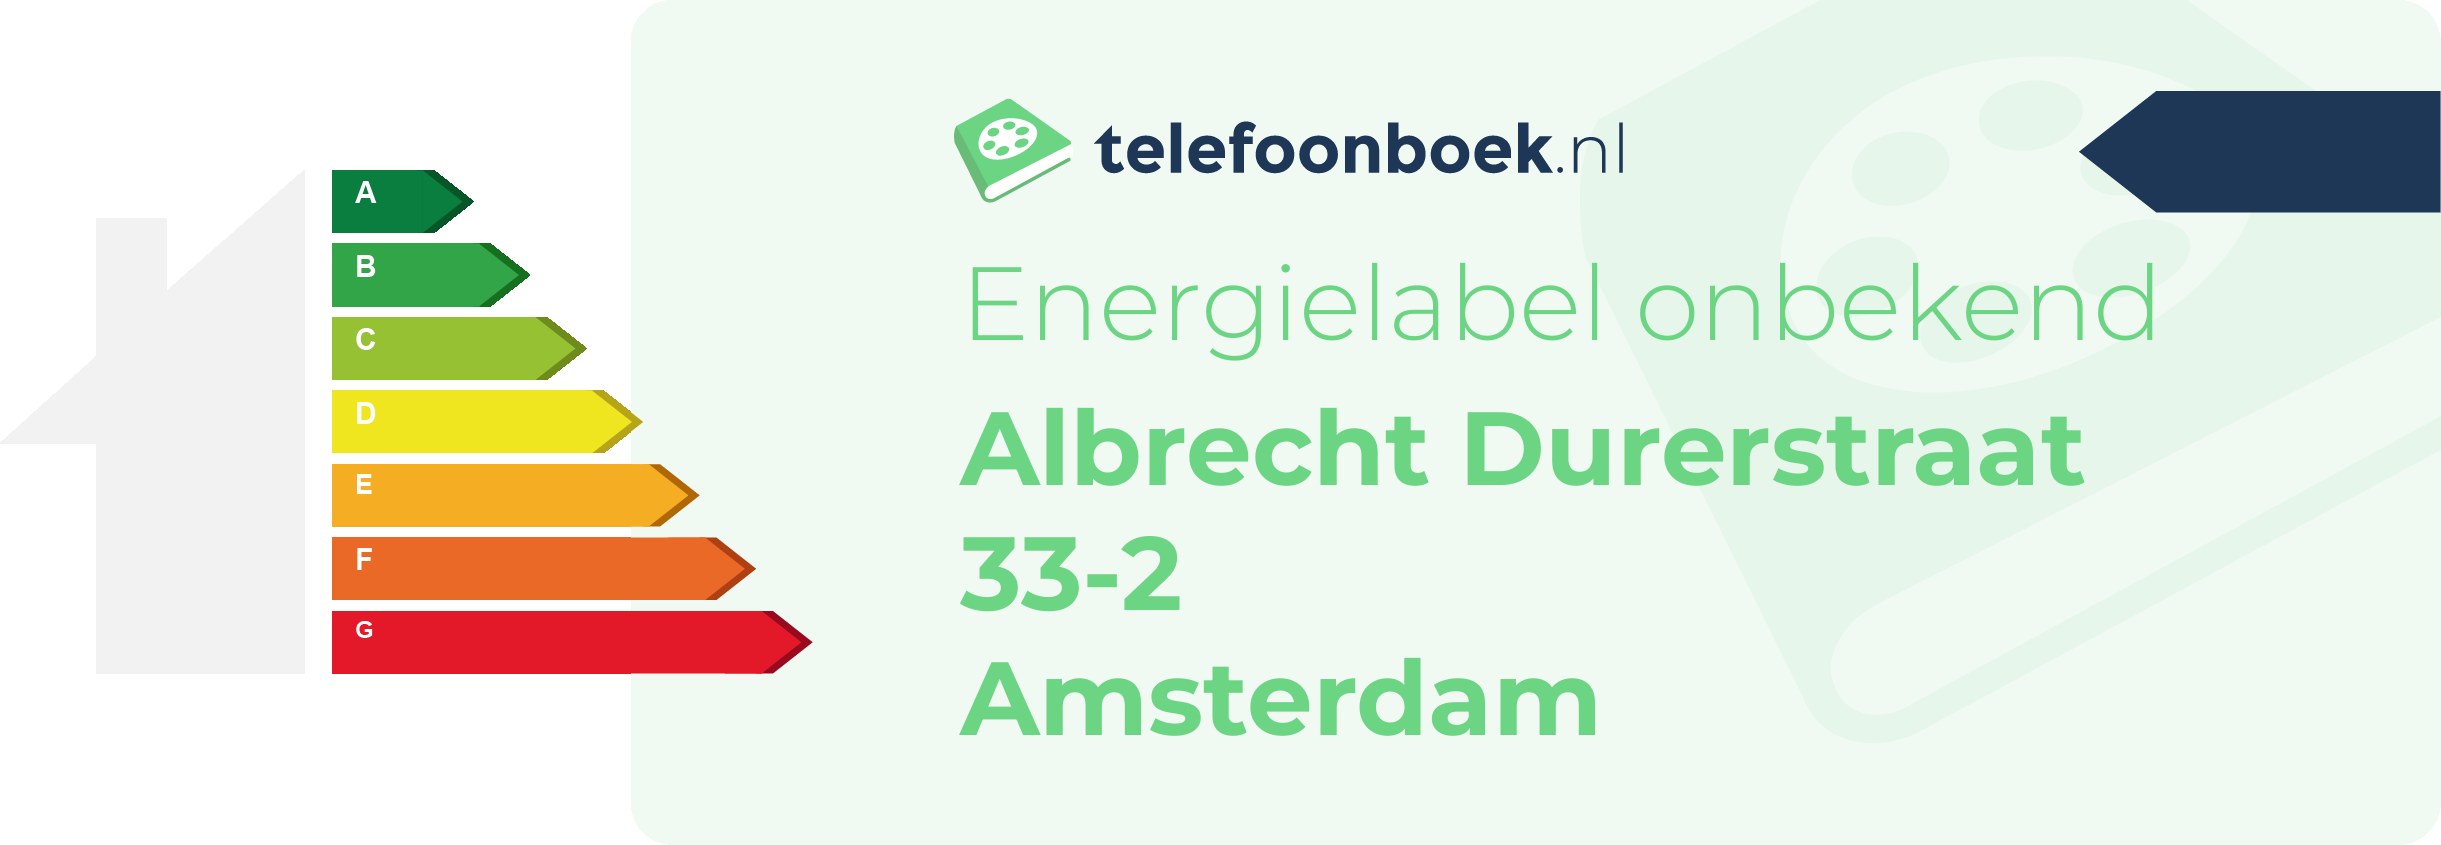 Energielabel Albrecht Durerstraat 33-2 Amsterdam